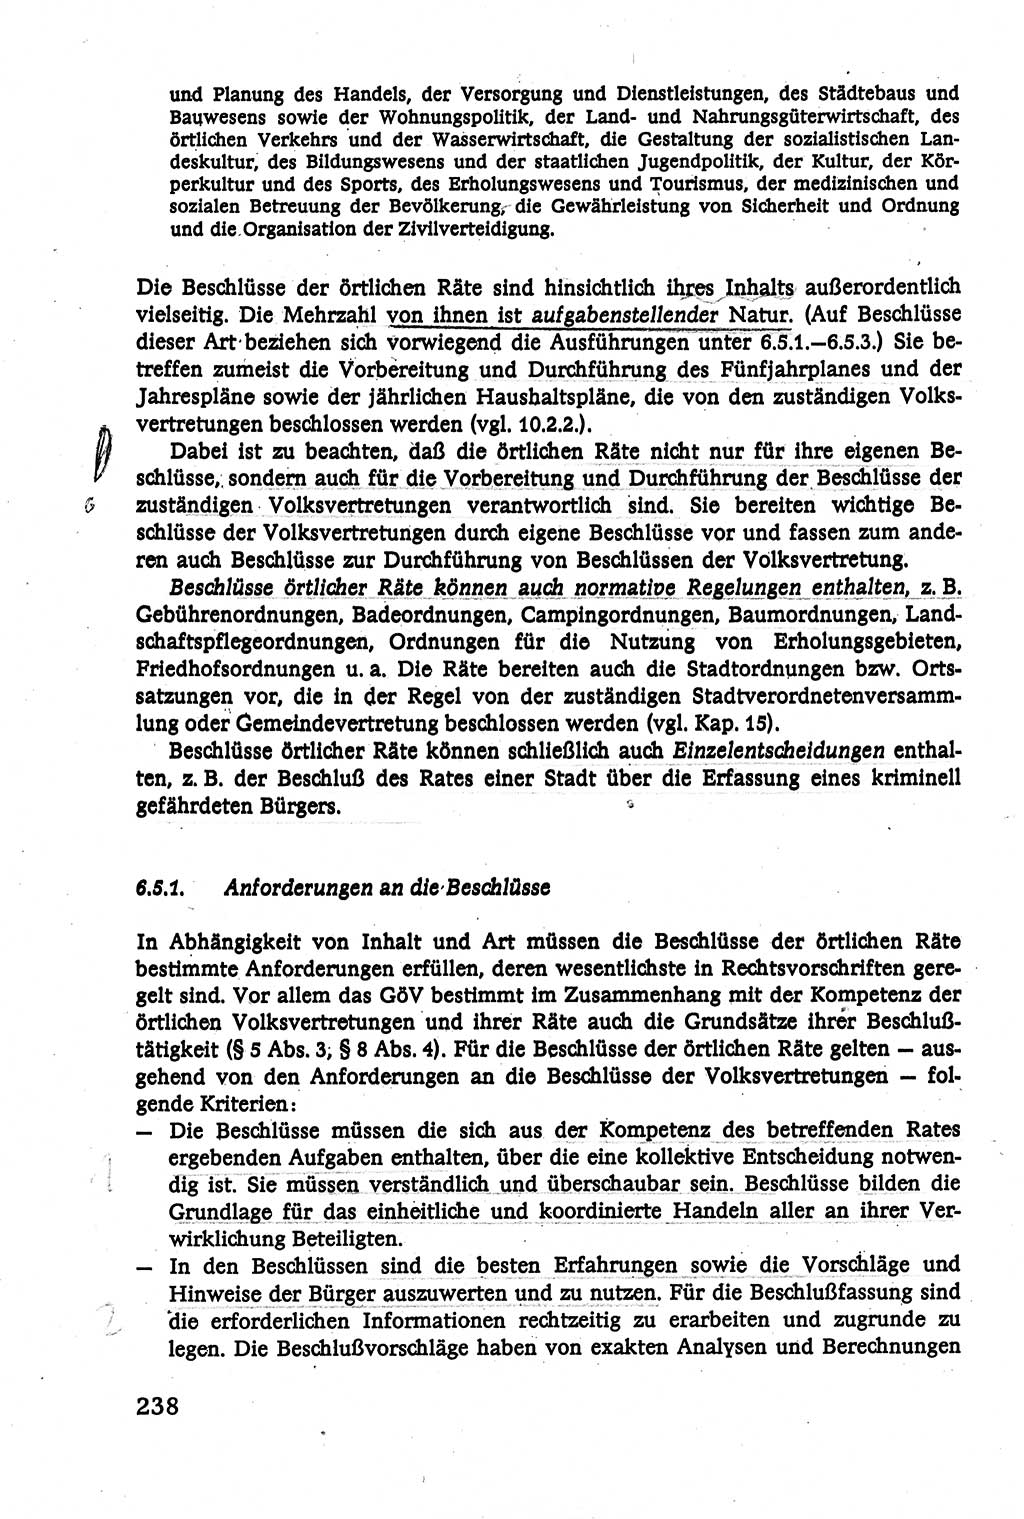 Verwaltungsrecht [Deutsche Demokratische Republik (DDR)], Lehrbuch 1979, Seite 238 (Verw.-R. DDR Lb. 1979, S. 238)